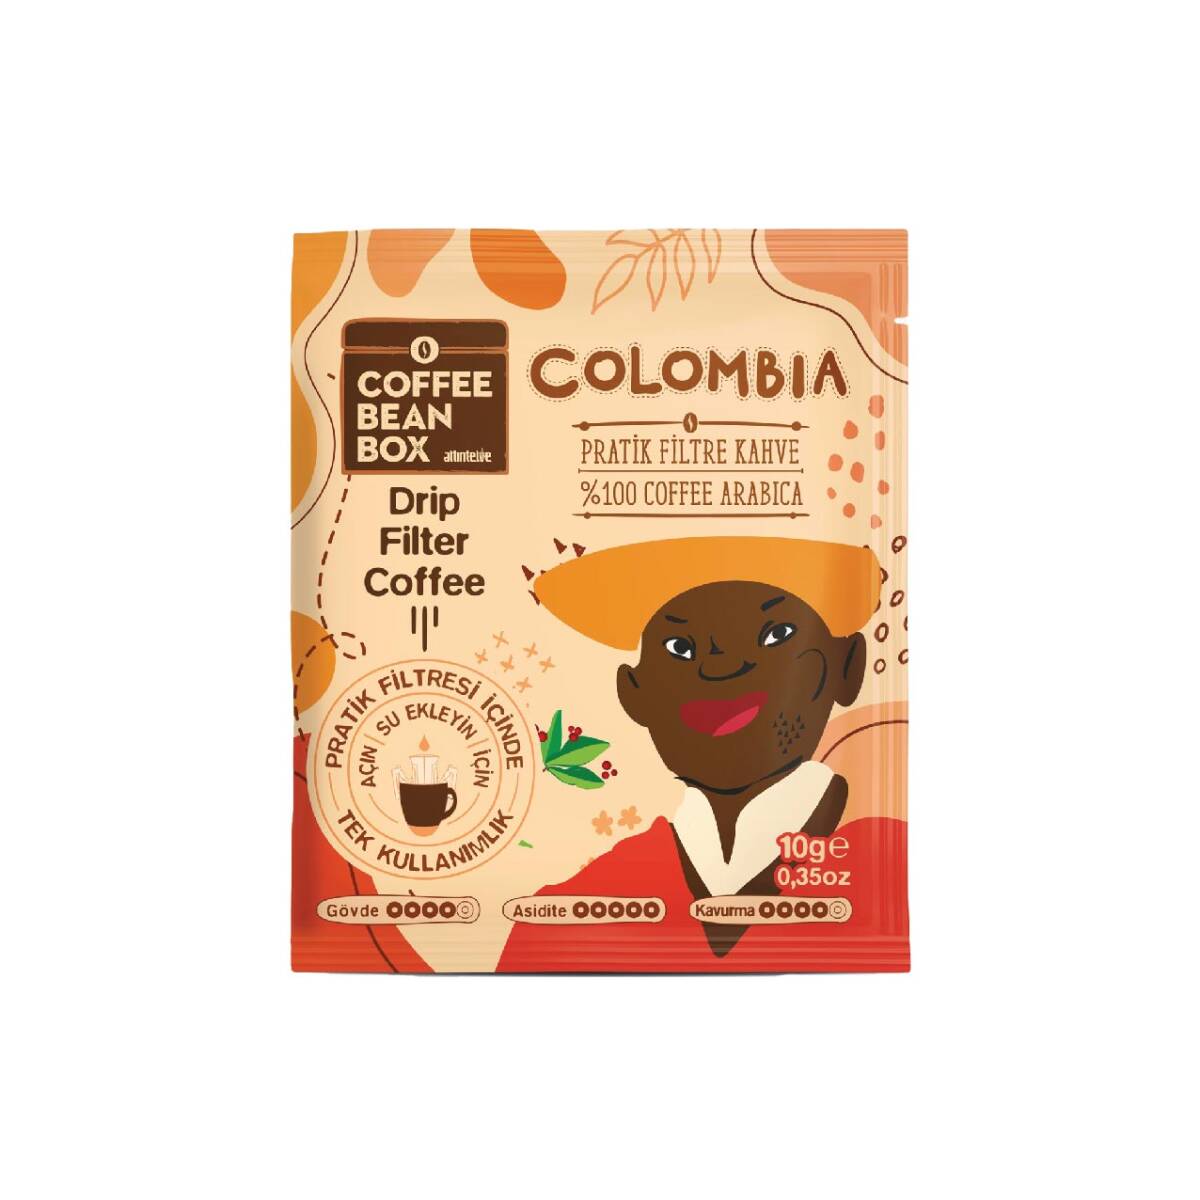 Colombia Pratik Filtre Kahve 10 Gr - 1